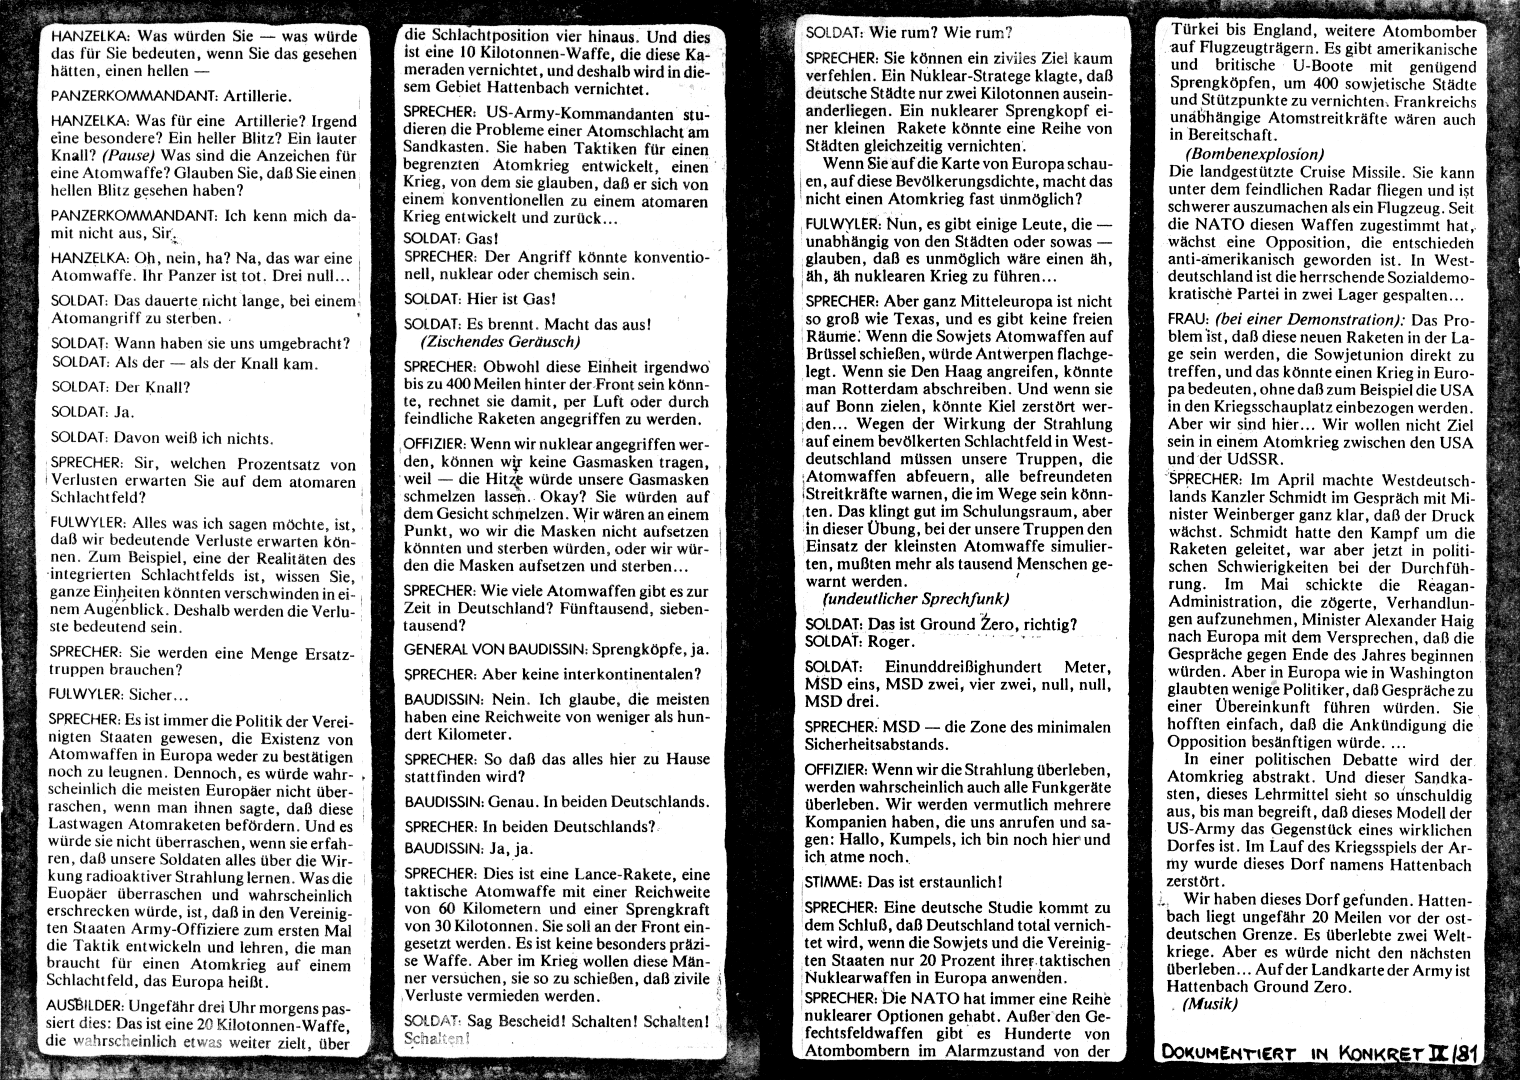 HZ 5 - Seite 10 und 11